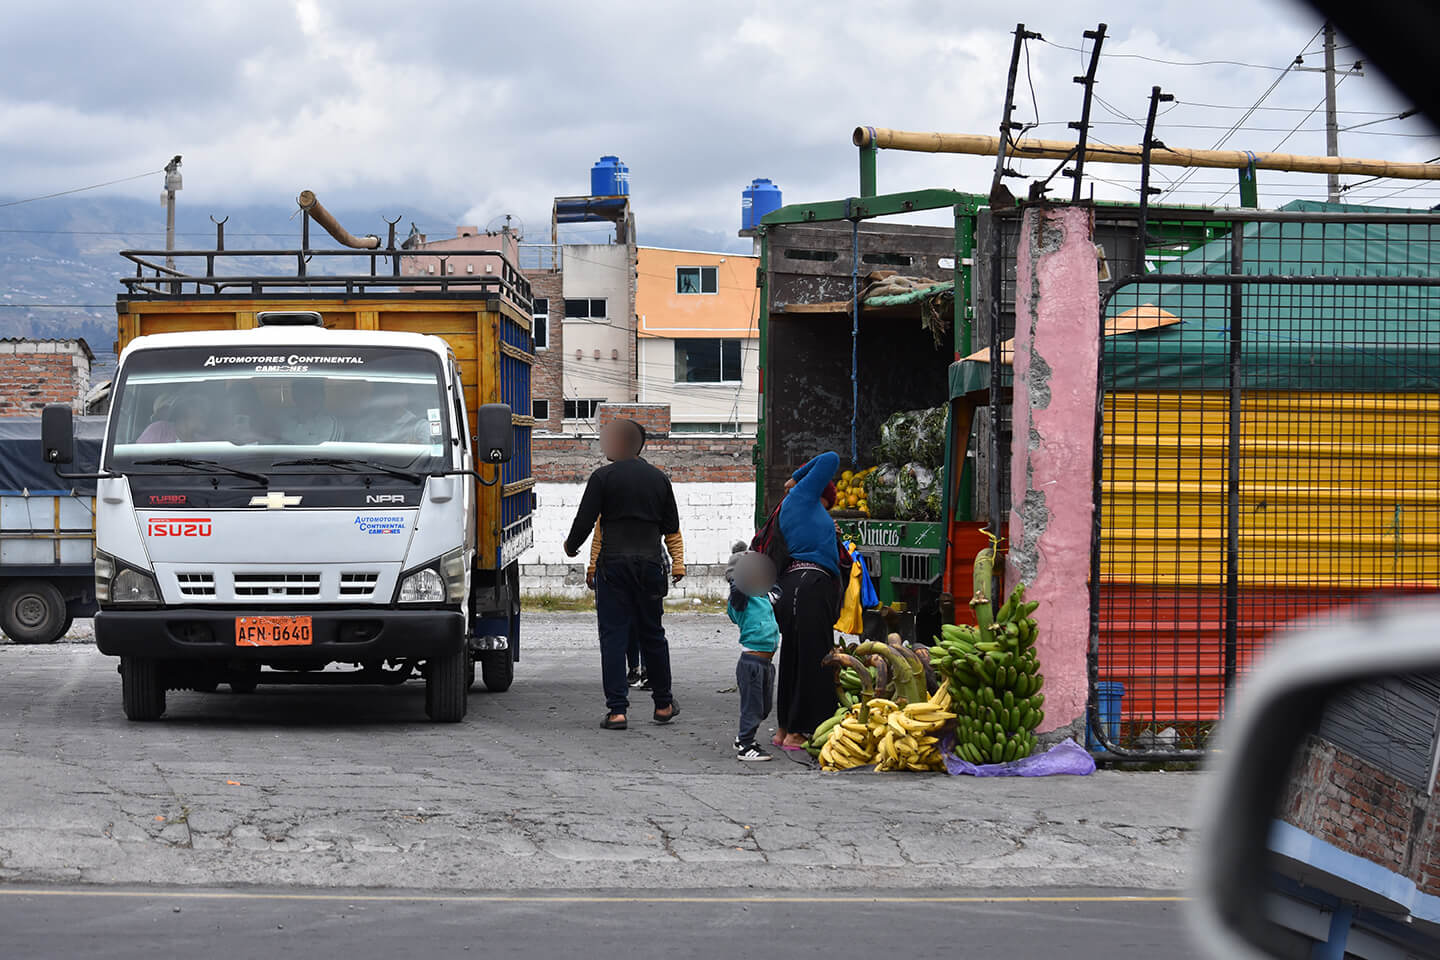 Los comerciantes informales colocan sus productos en los contornos del camión.